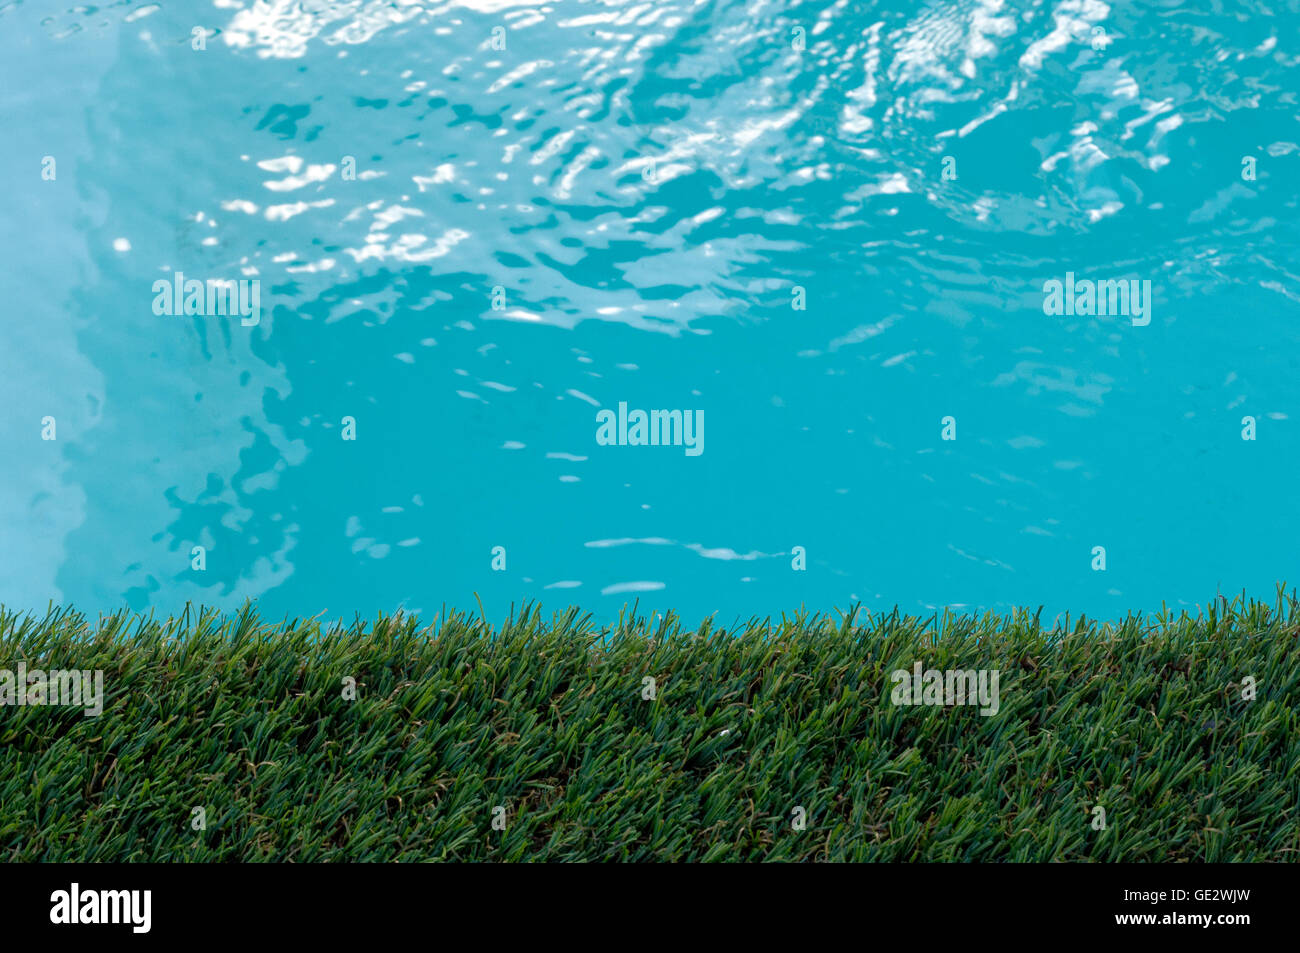 Dettaglio della piscina interna con erba artificiale Foto Stock